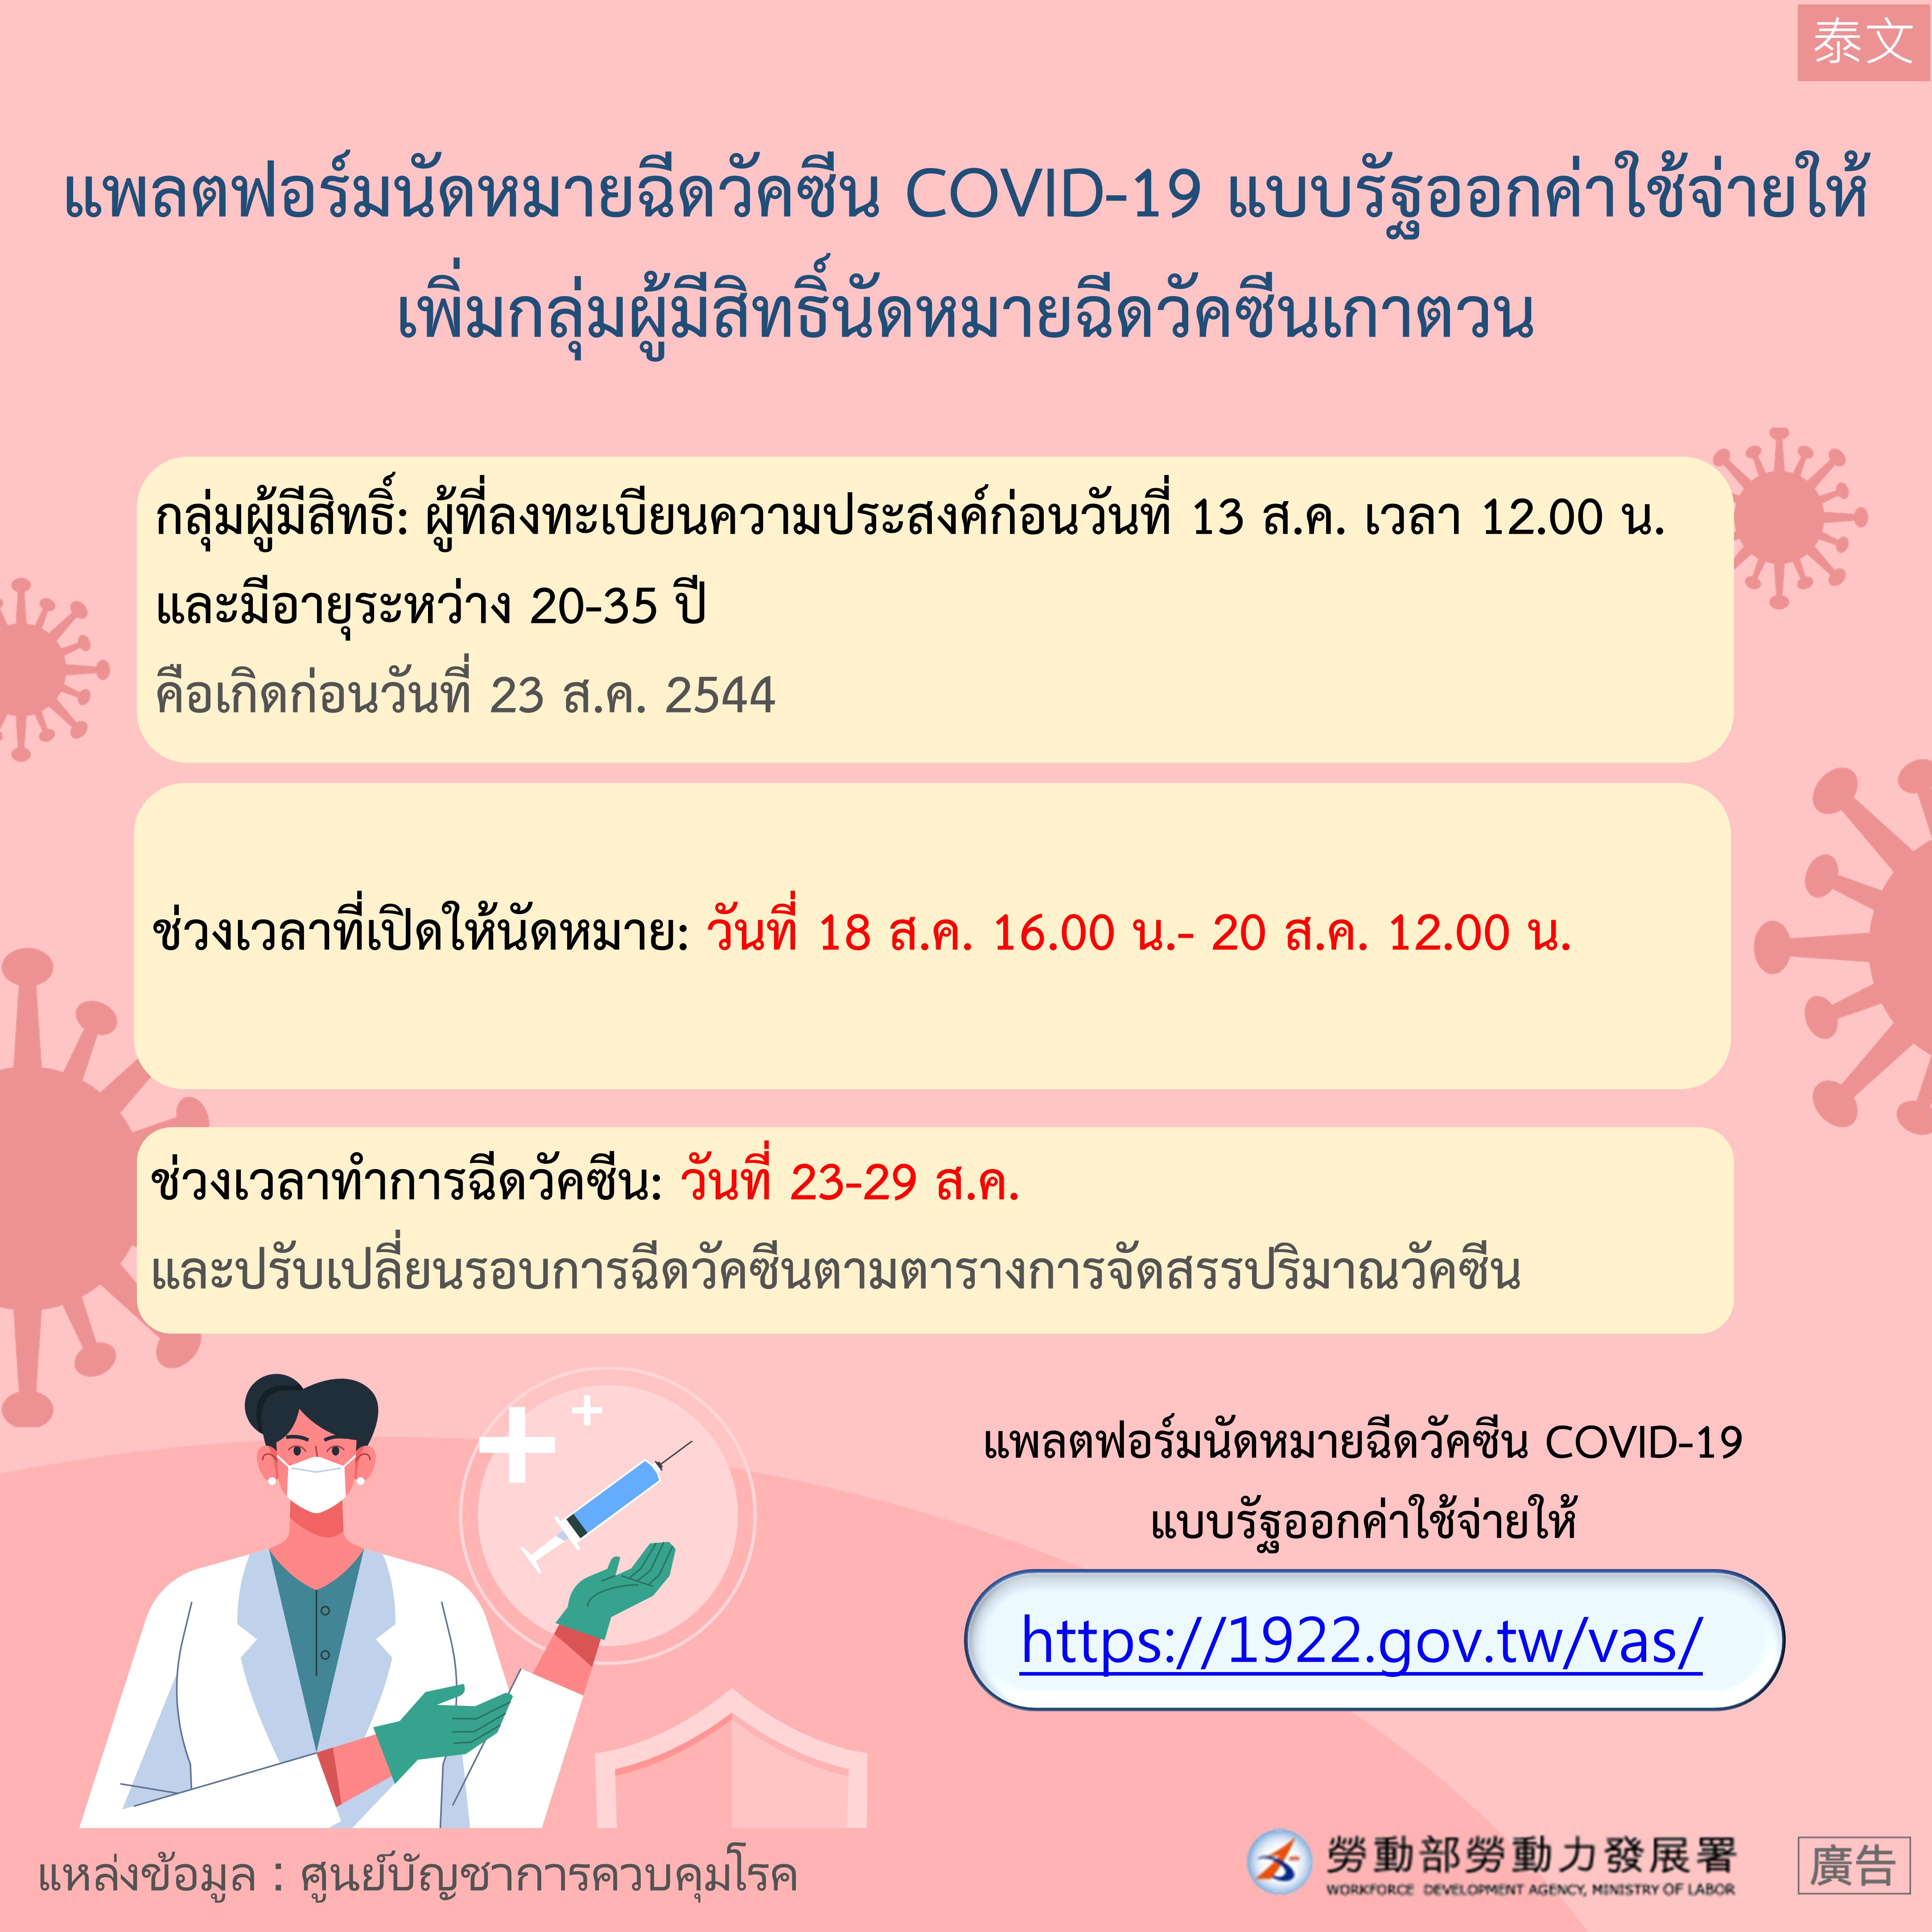 COVID-19公費疫苗預約平台增開高端疫苗預約接種對象-泰文